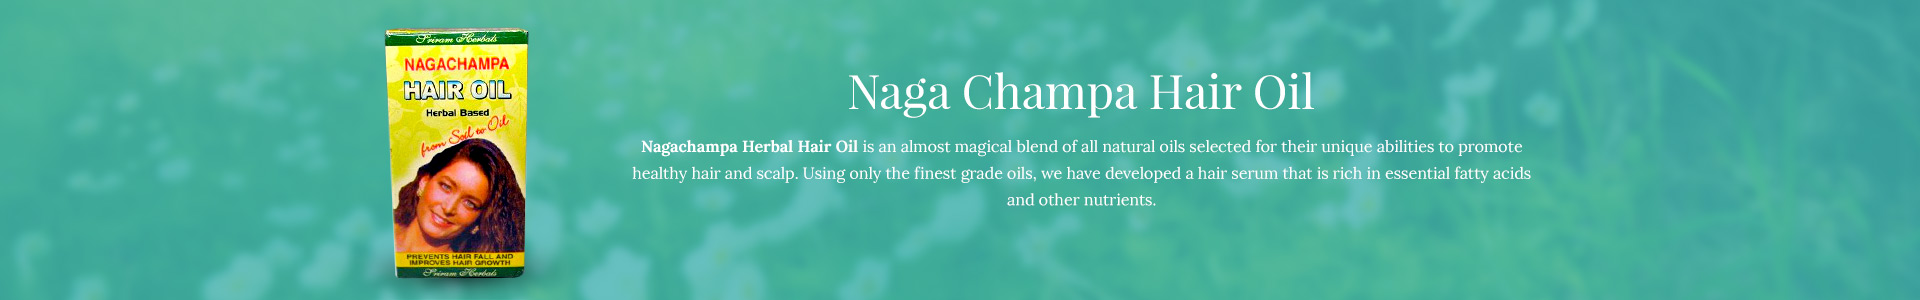 naga-champa-hair-oil